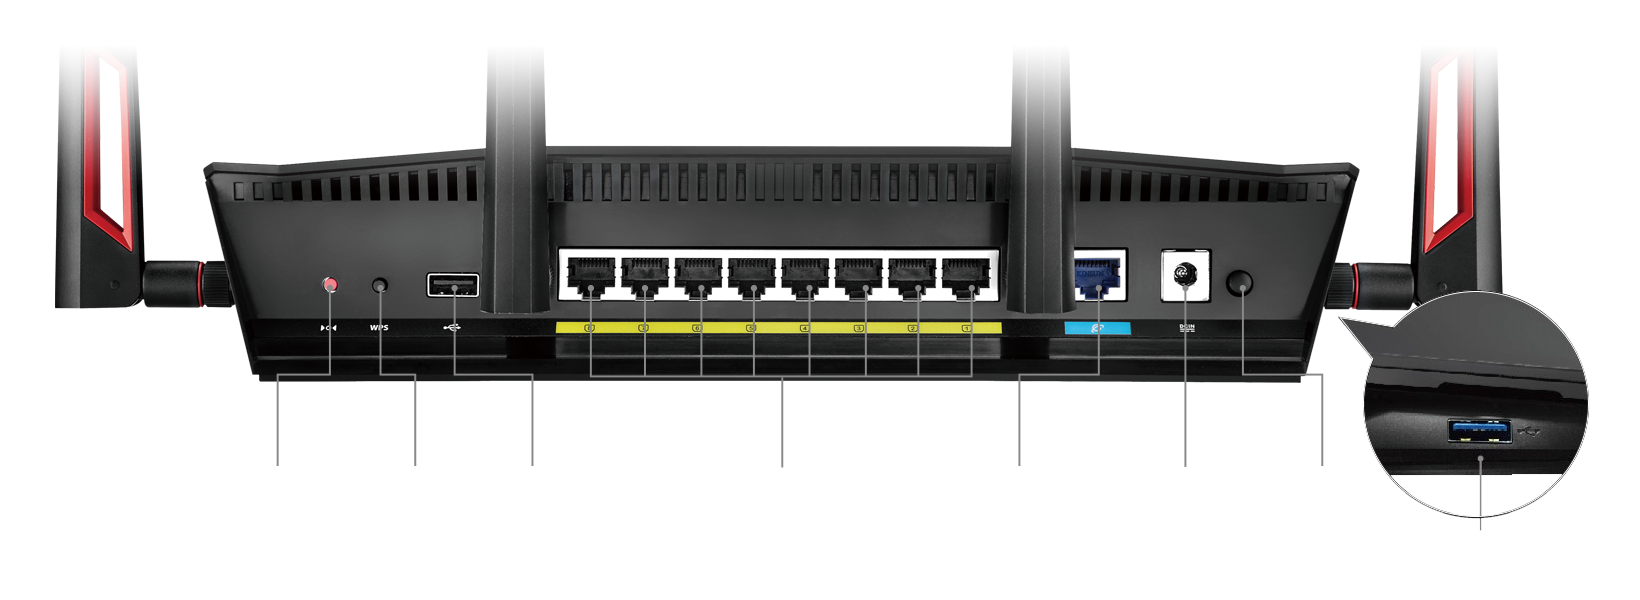 8 Portas LAN Gigabit - o dobro das portas que a maioria dos routers fornece - tornando o RT-AC88U no seu hub digital doméstico.